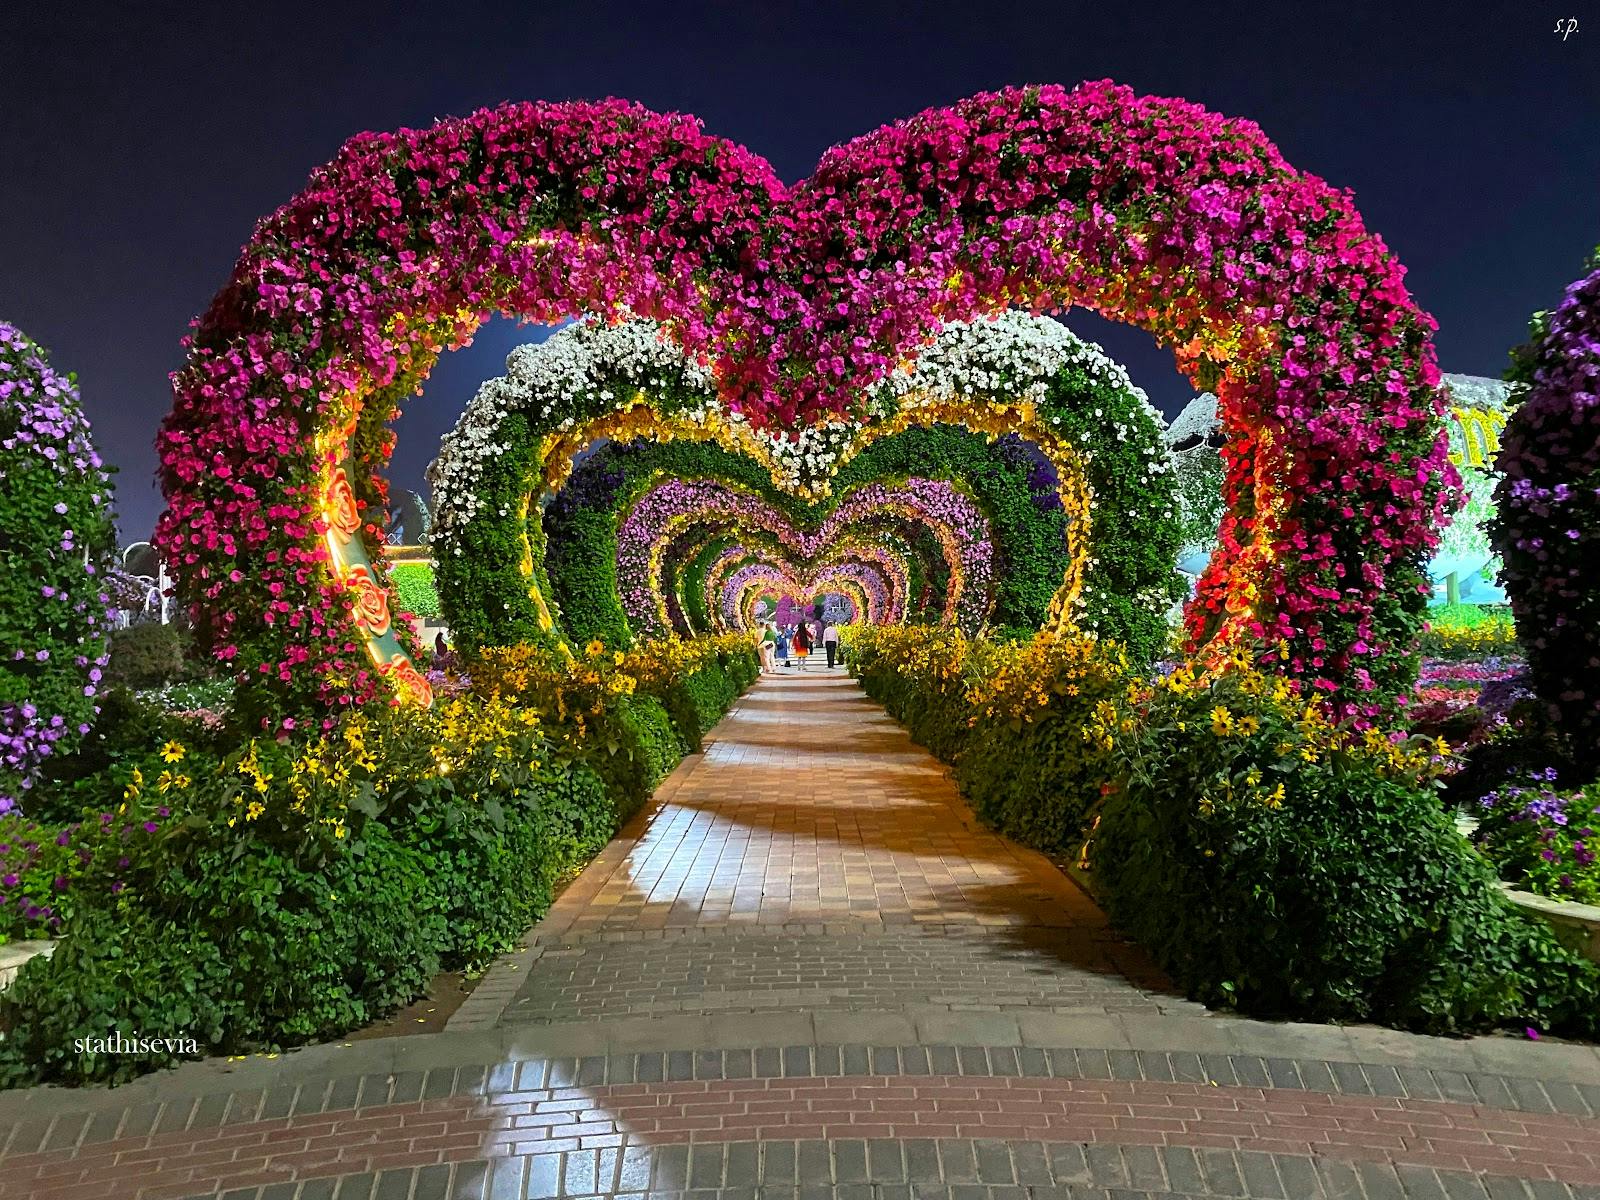 Image - Dubai Miracle Garden